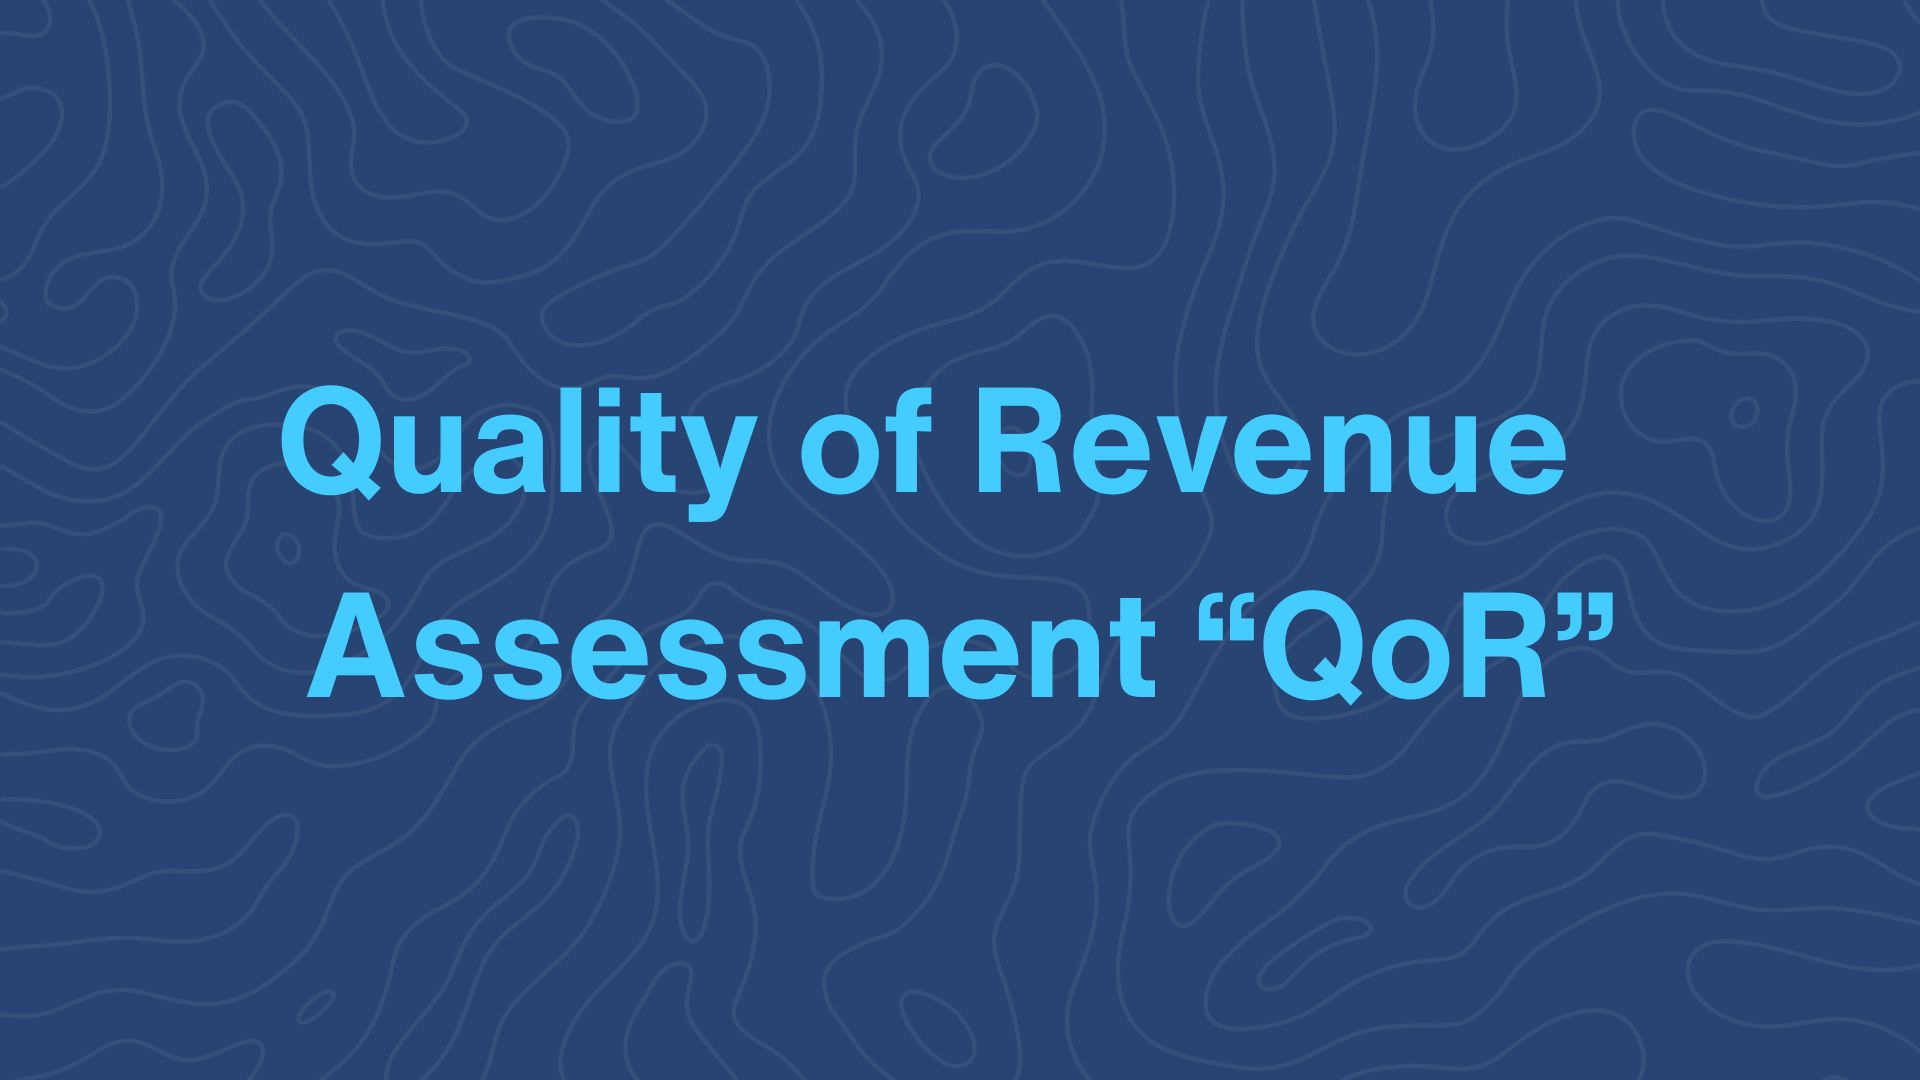 Quality of Revenue Assessment